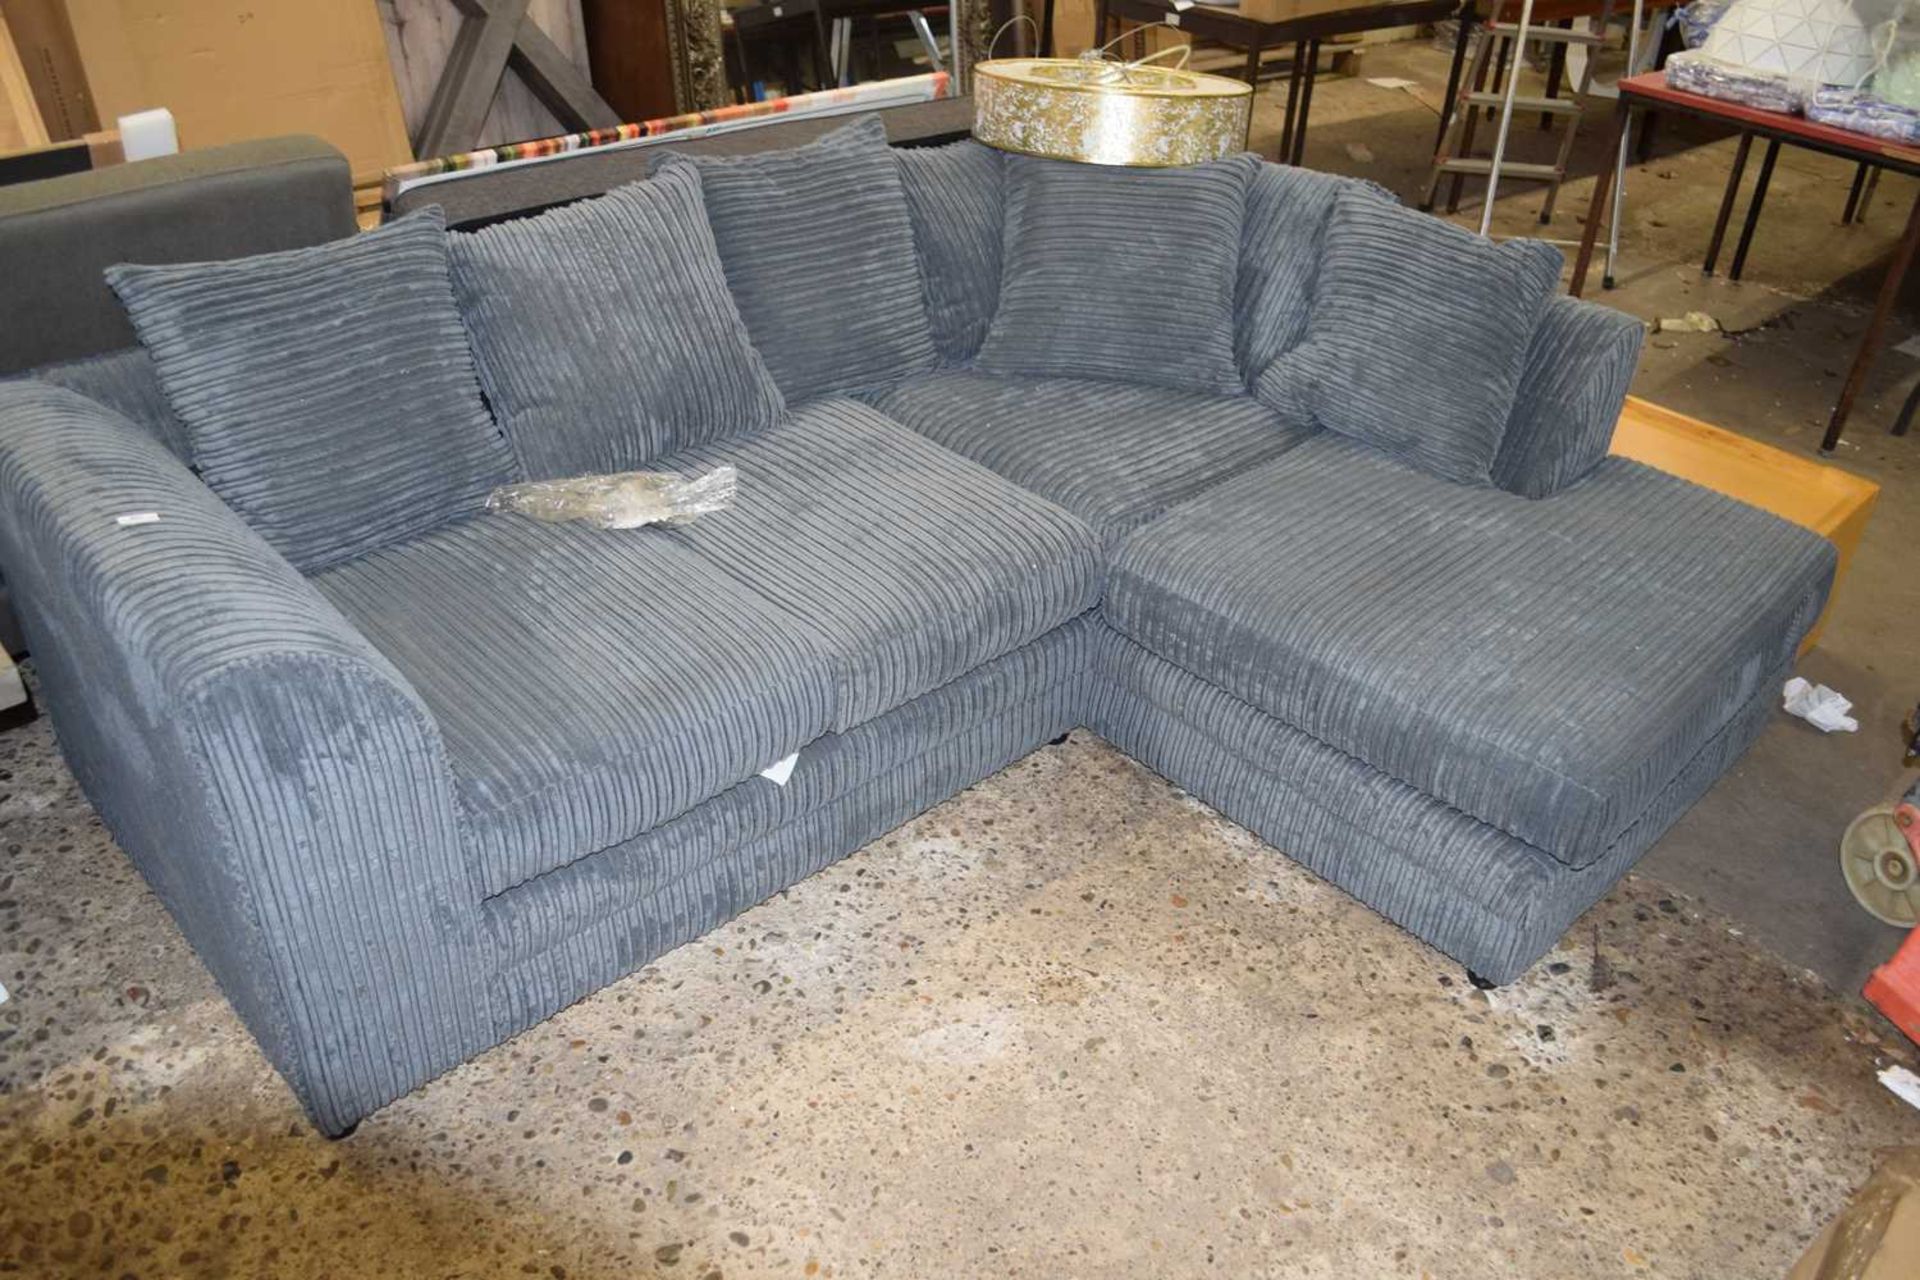 Moana corner sofa, upholstered in grey